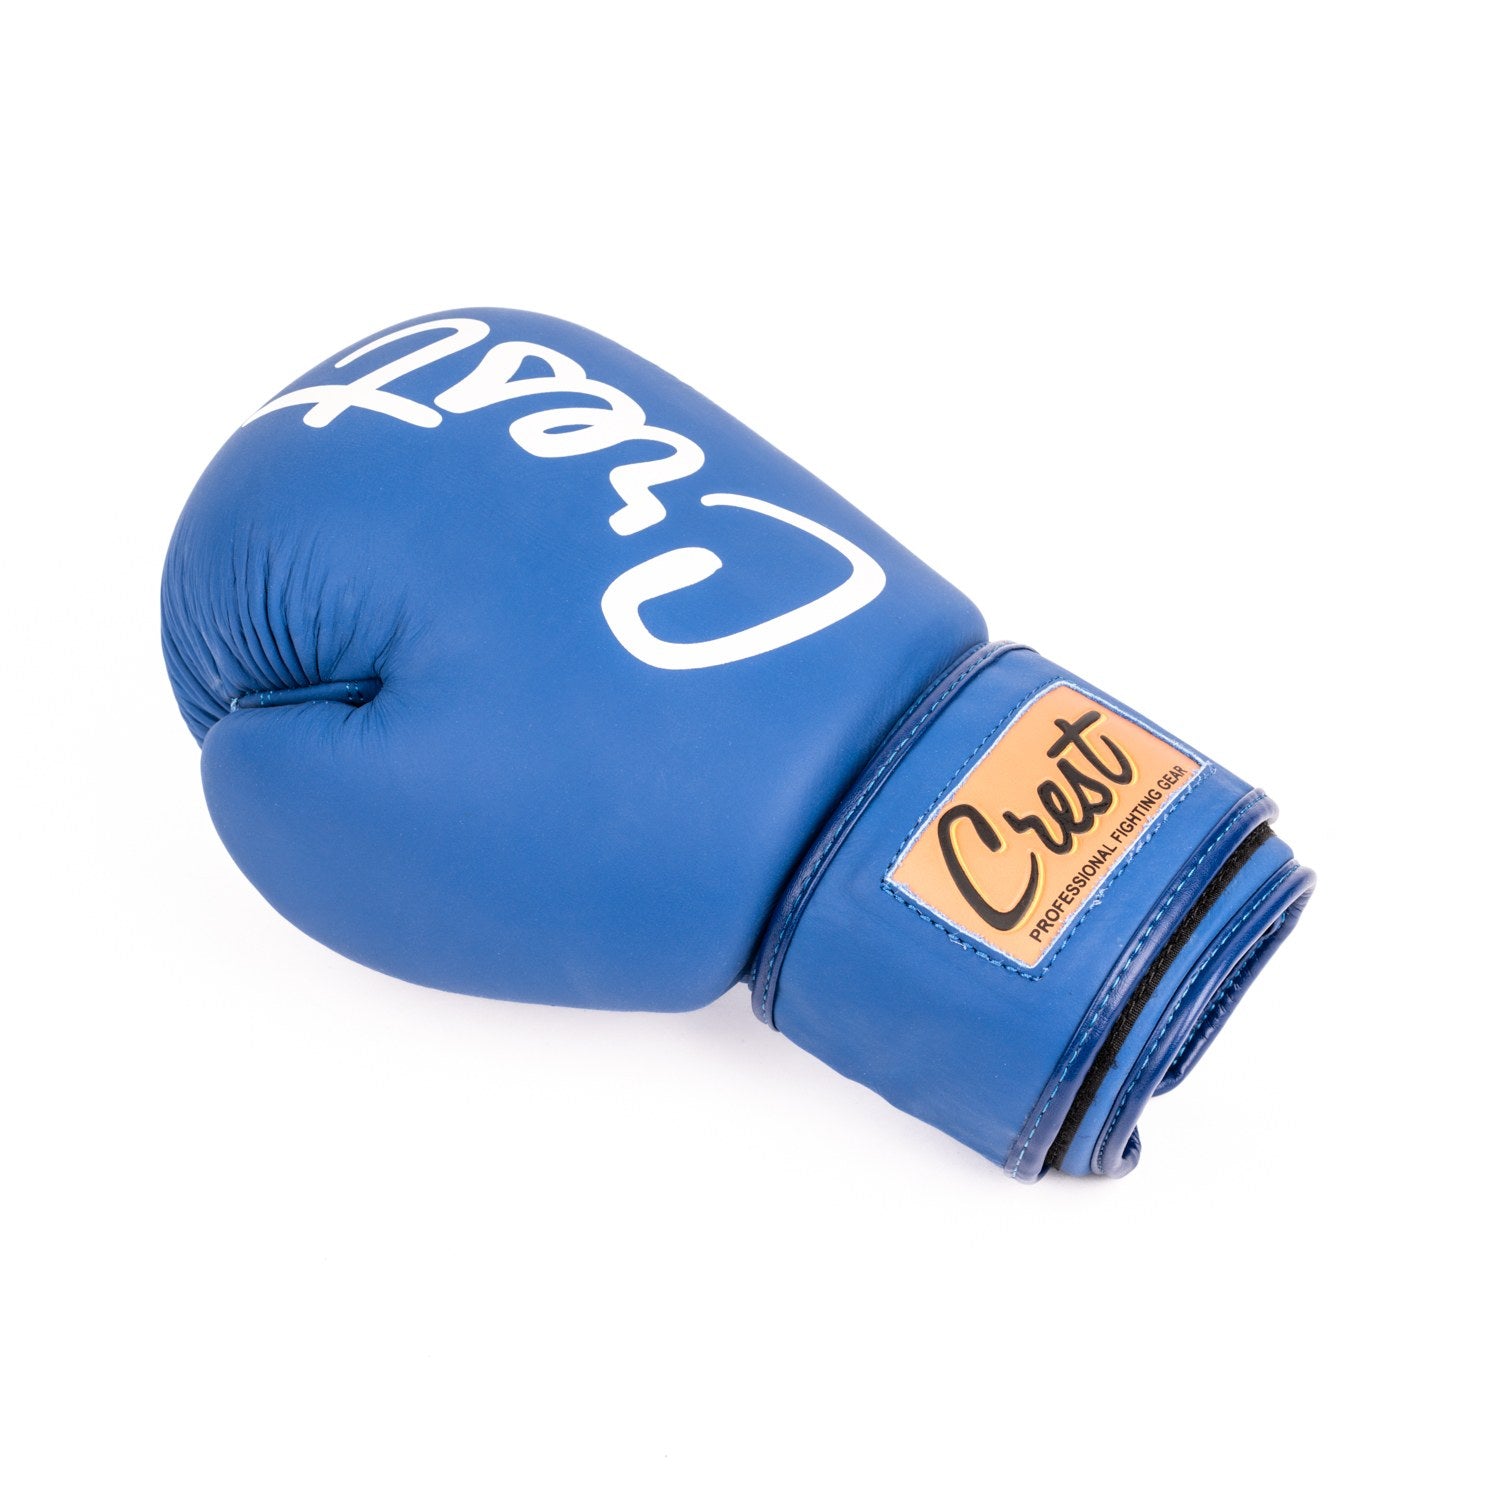 Crest Boxing Gloves "Trivor 1"